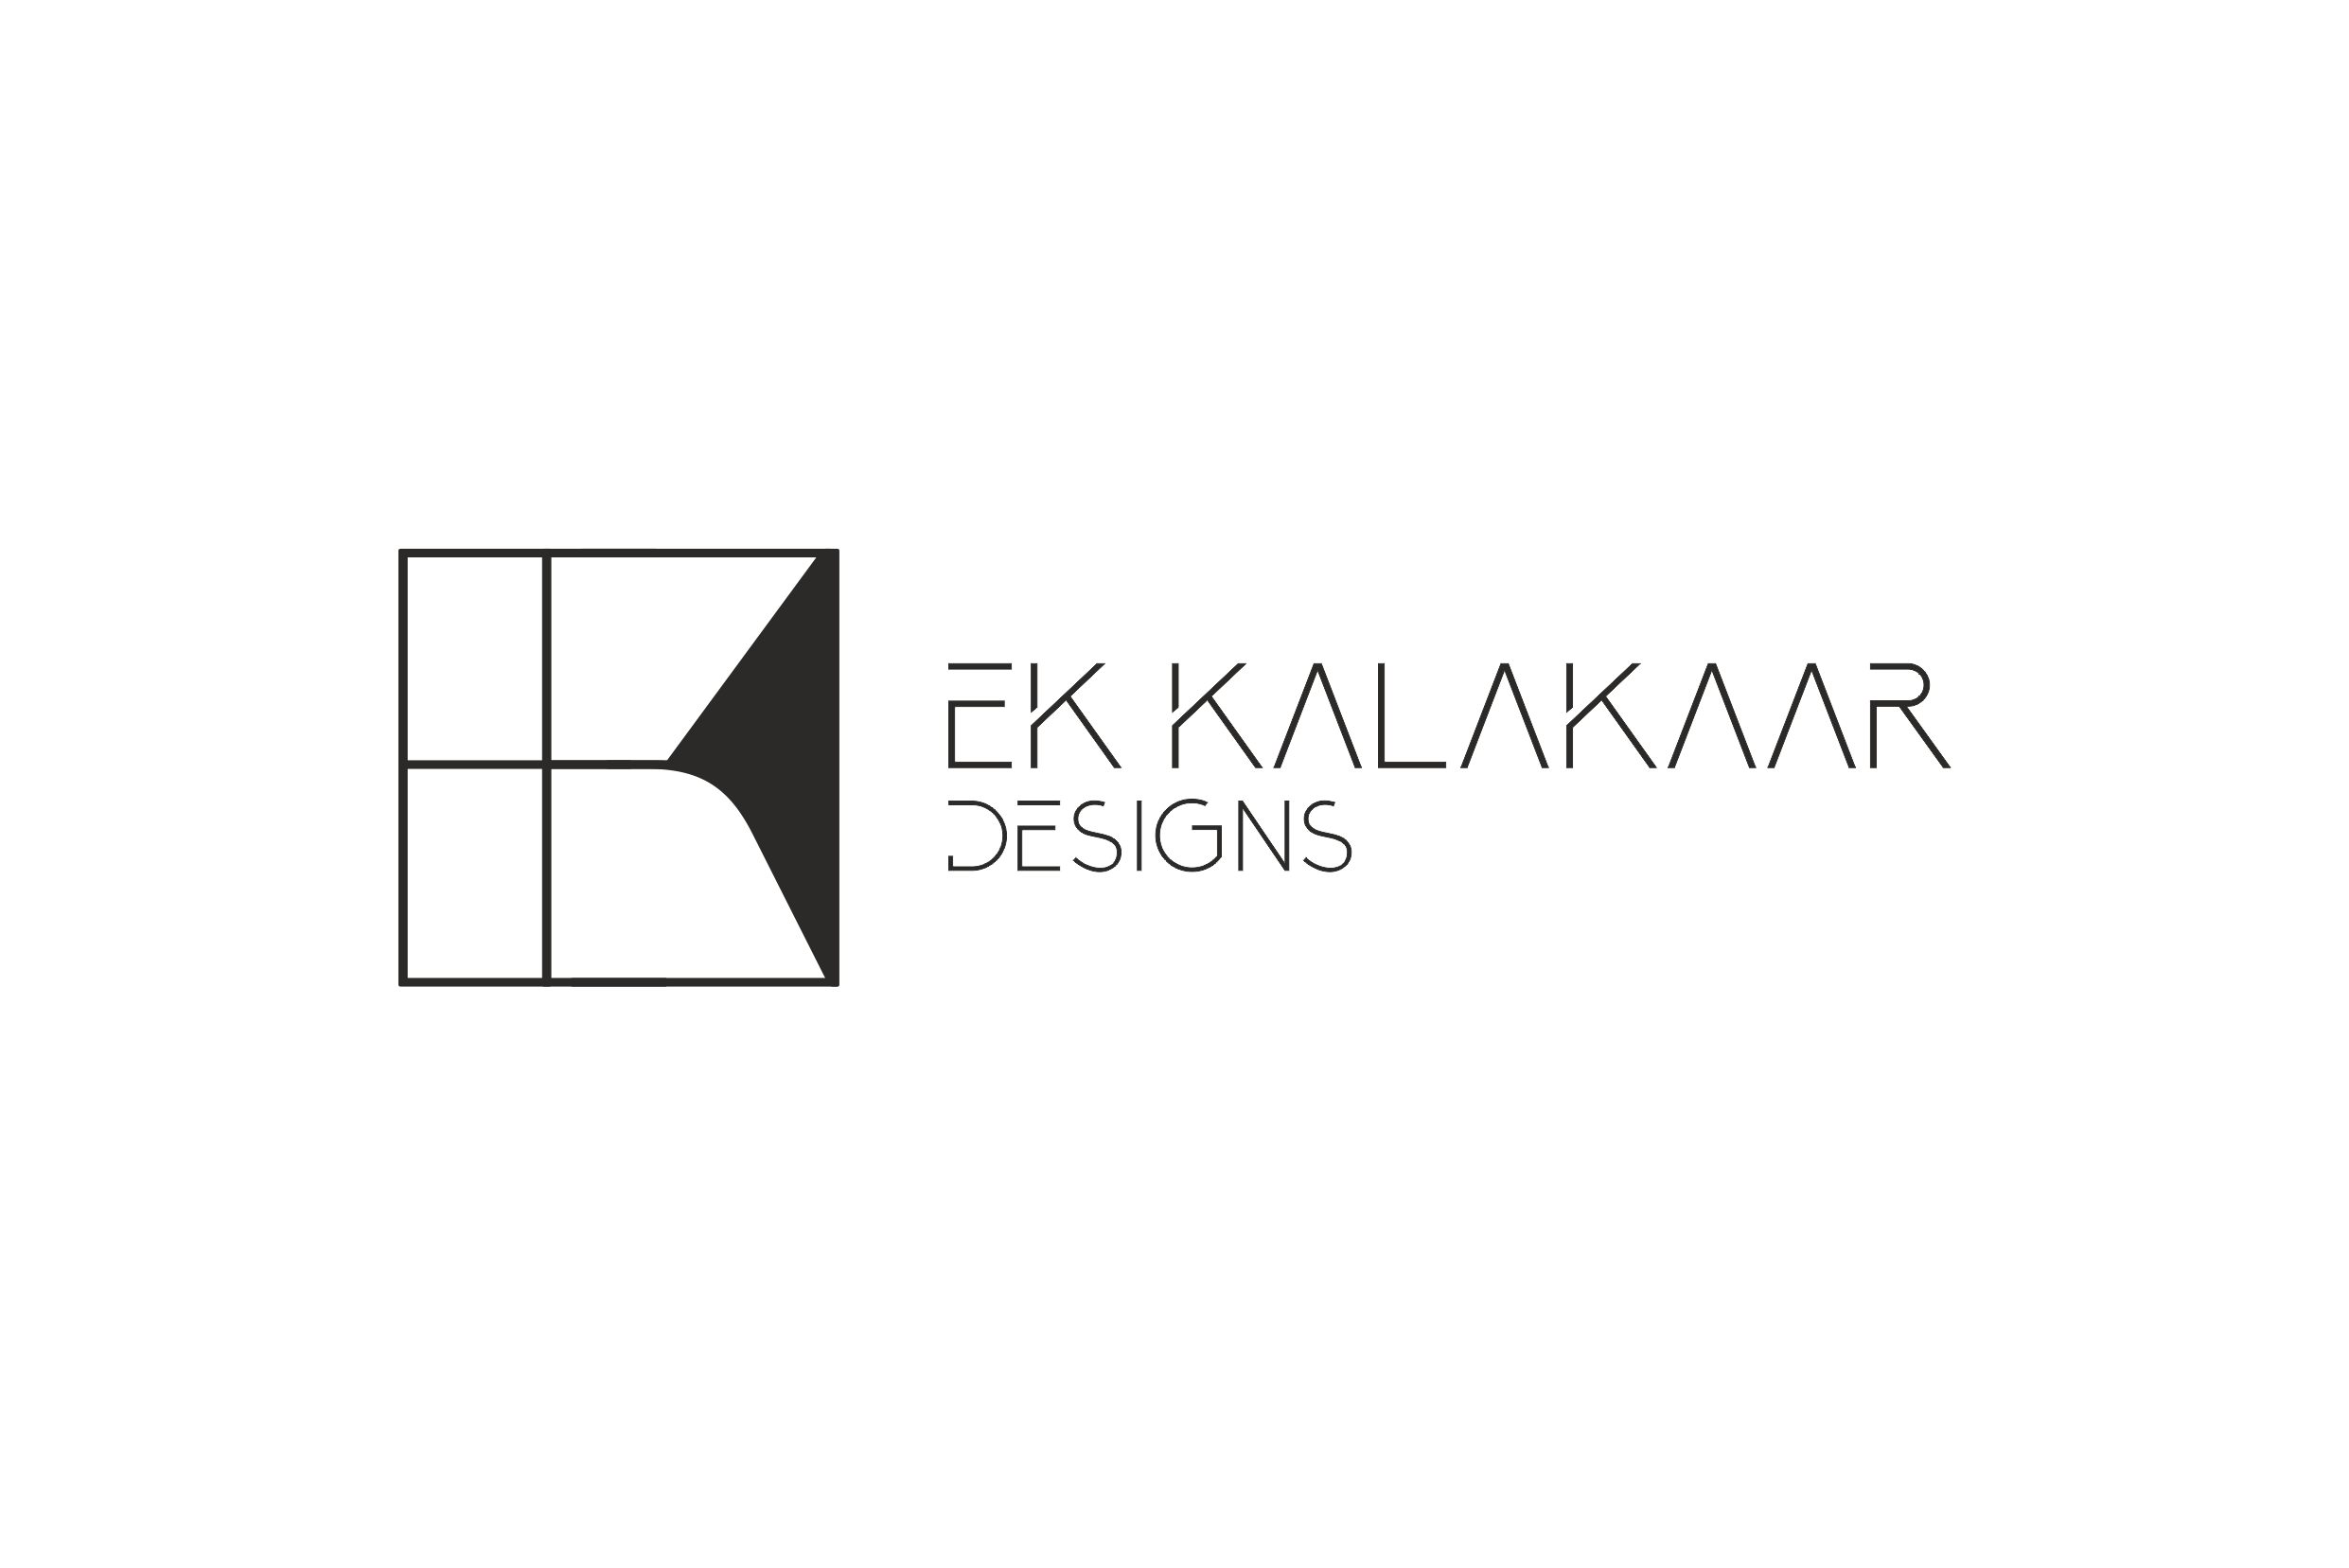 Ek Kalakaar Designs